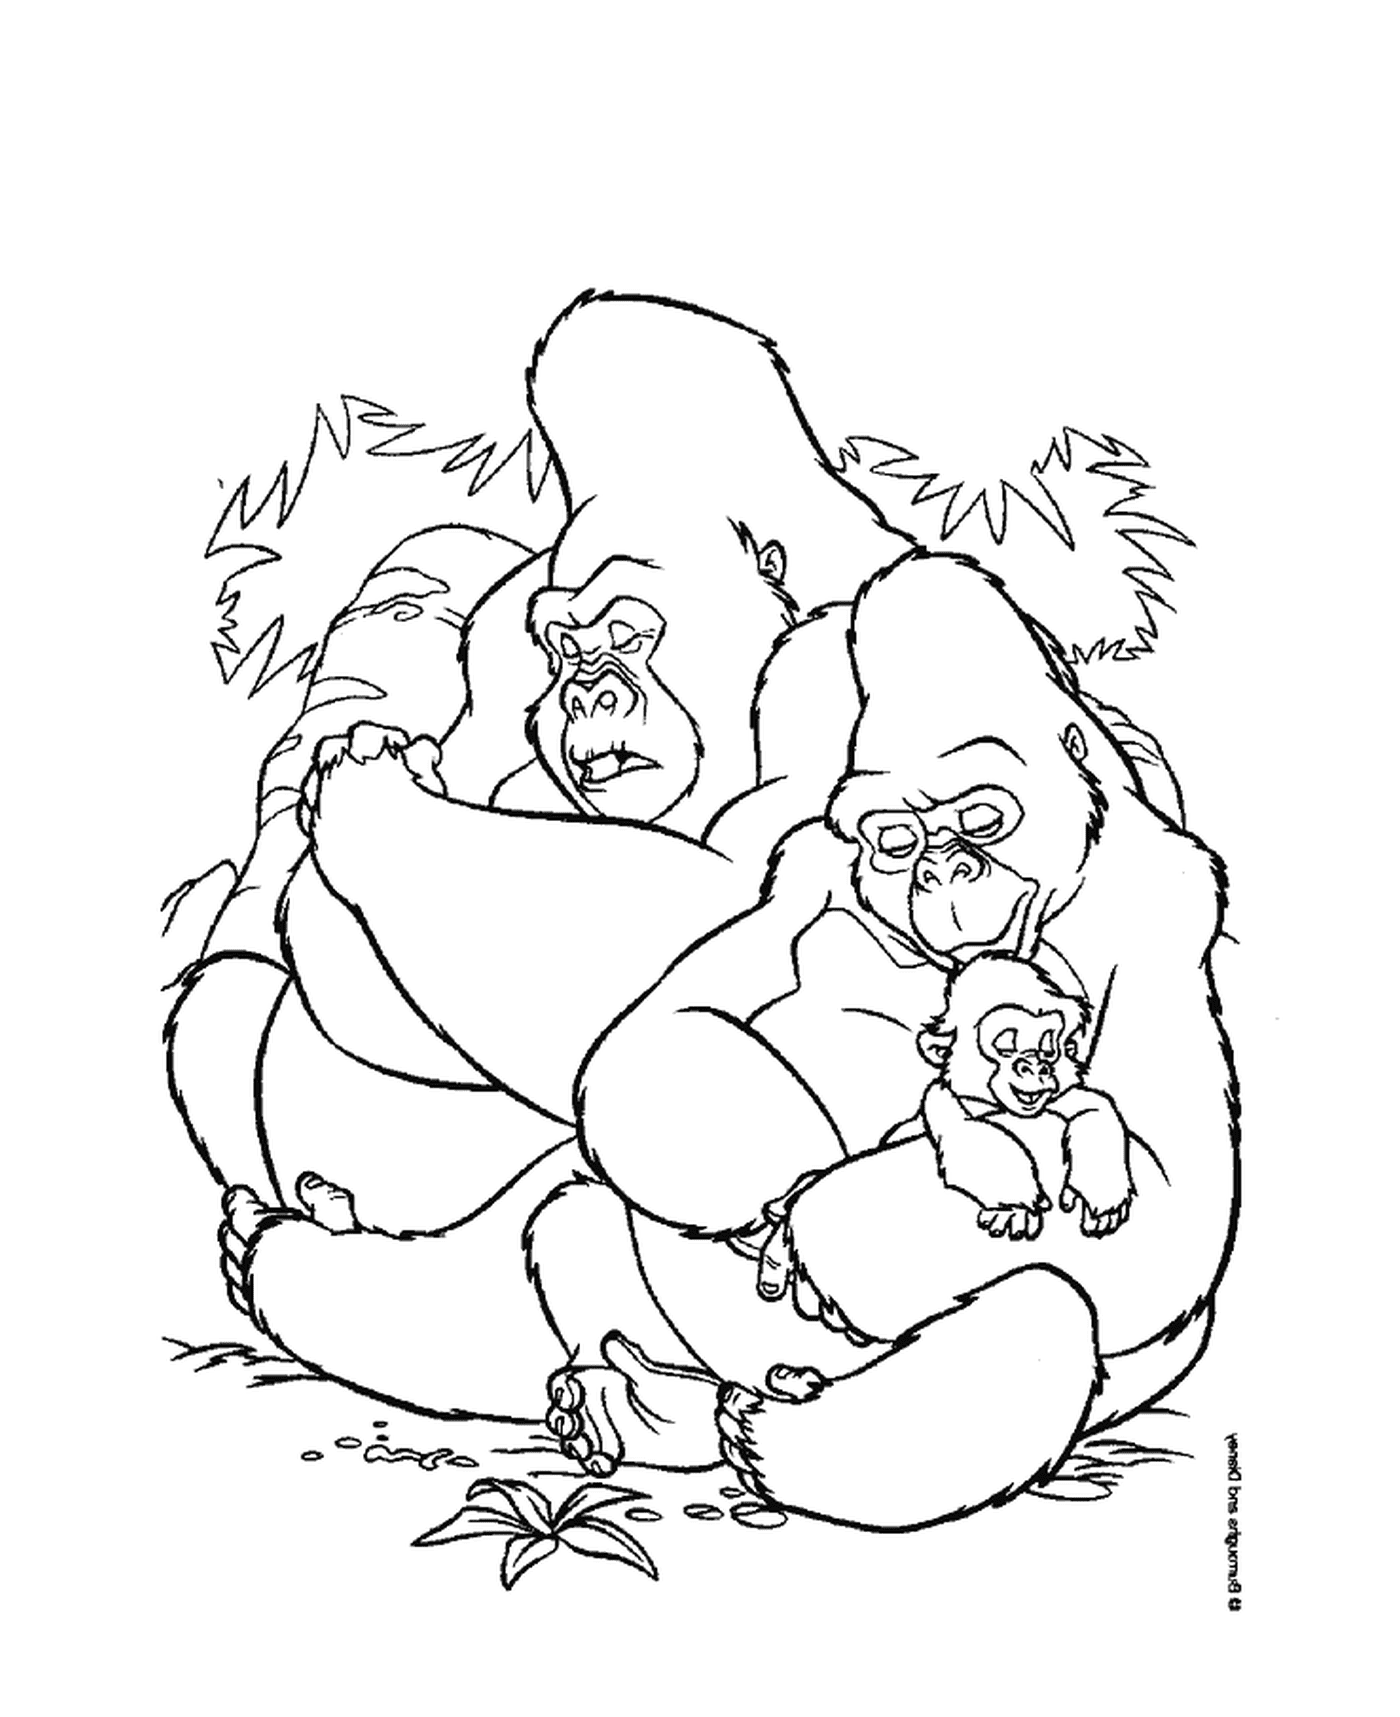  Gruppo di gorilla seduti l'uno sull'altro 